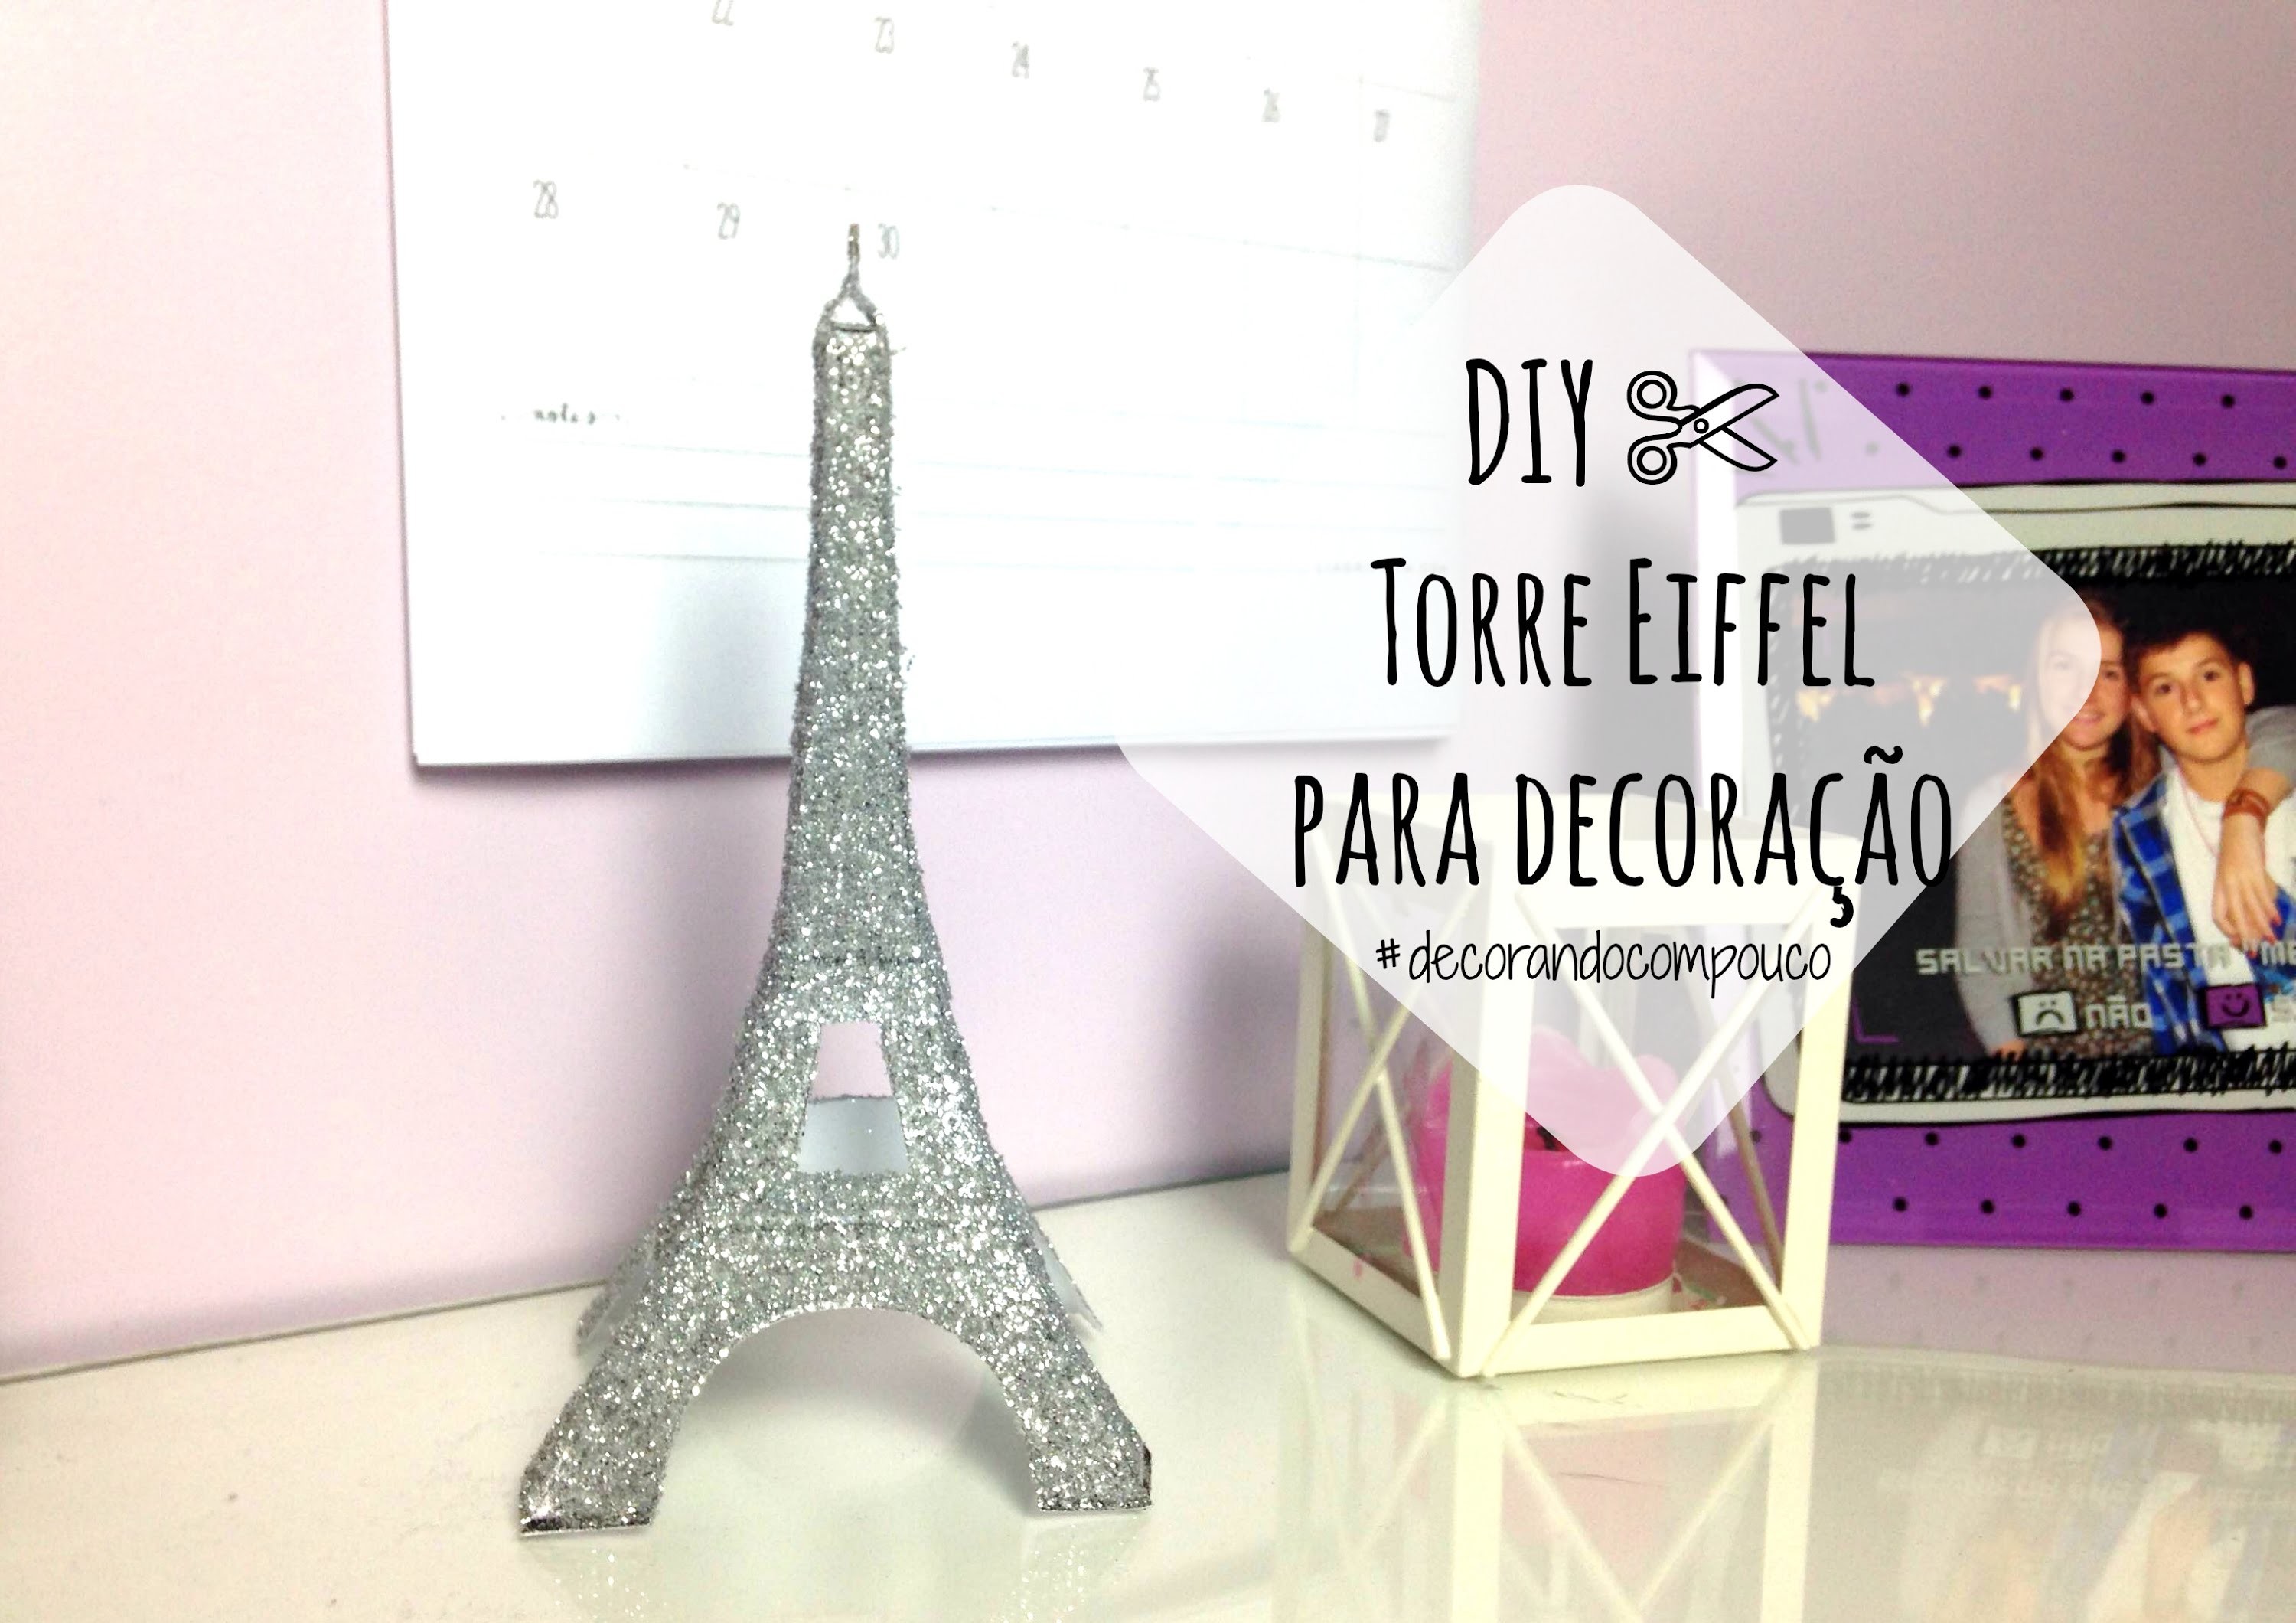 DIY ✄ Torre Eiffel para Decoração | #decorandocompouco